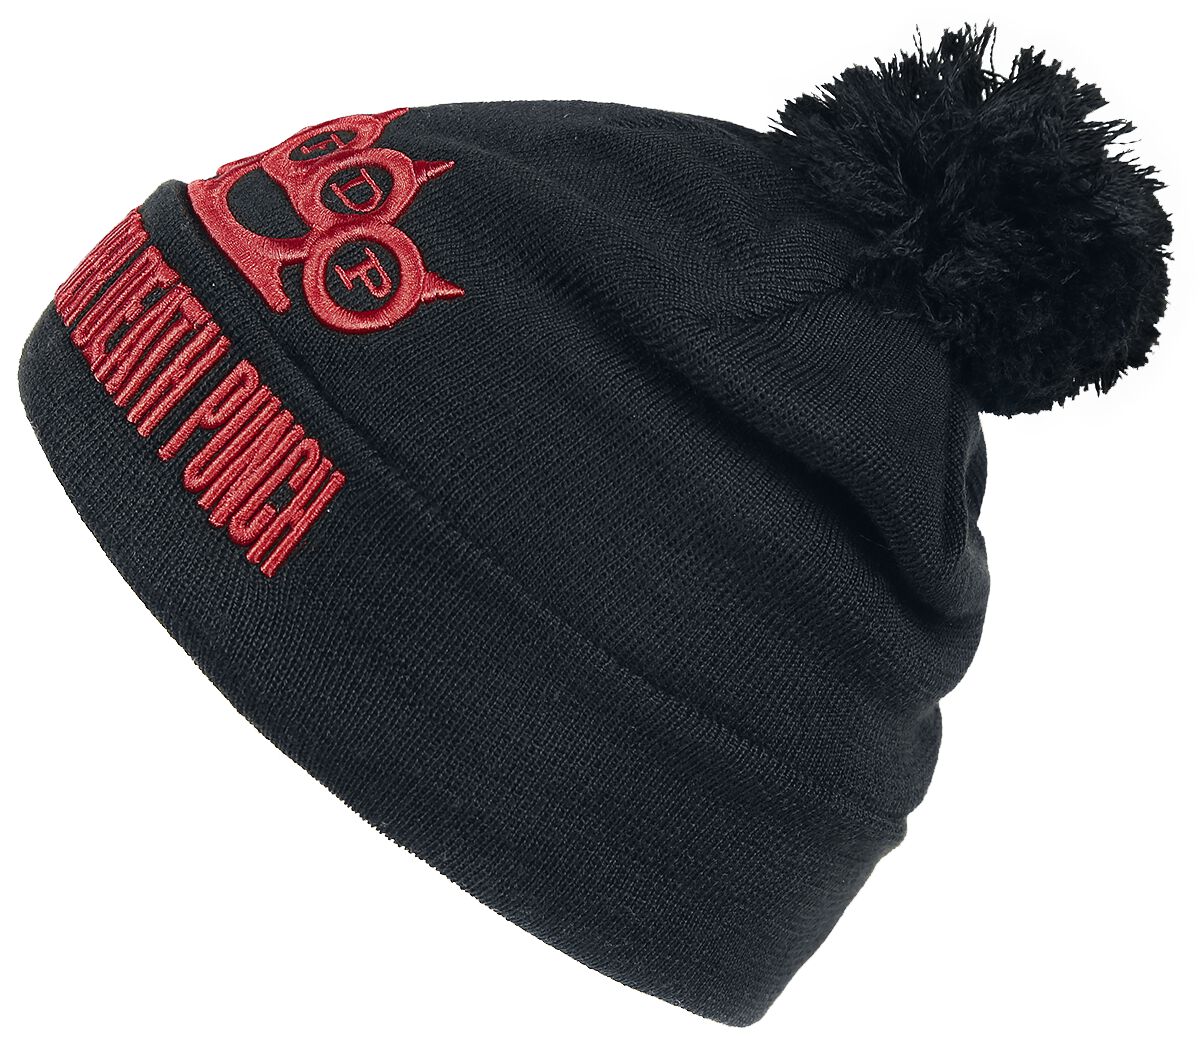 Five Finger Death Punch Mütze - Logo Beanie - schwarz  - EMP exklusives Merchandise!